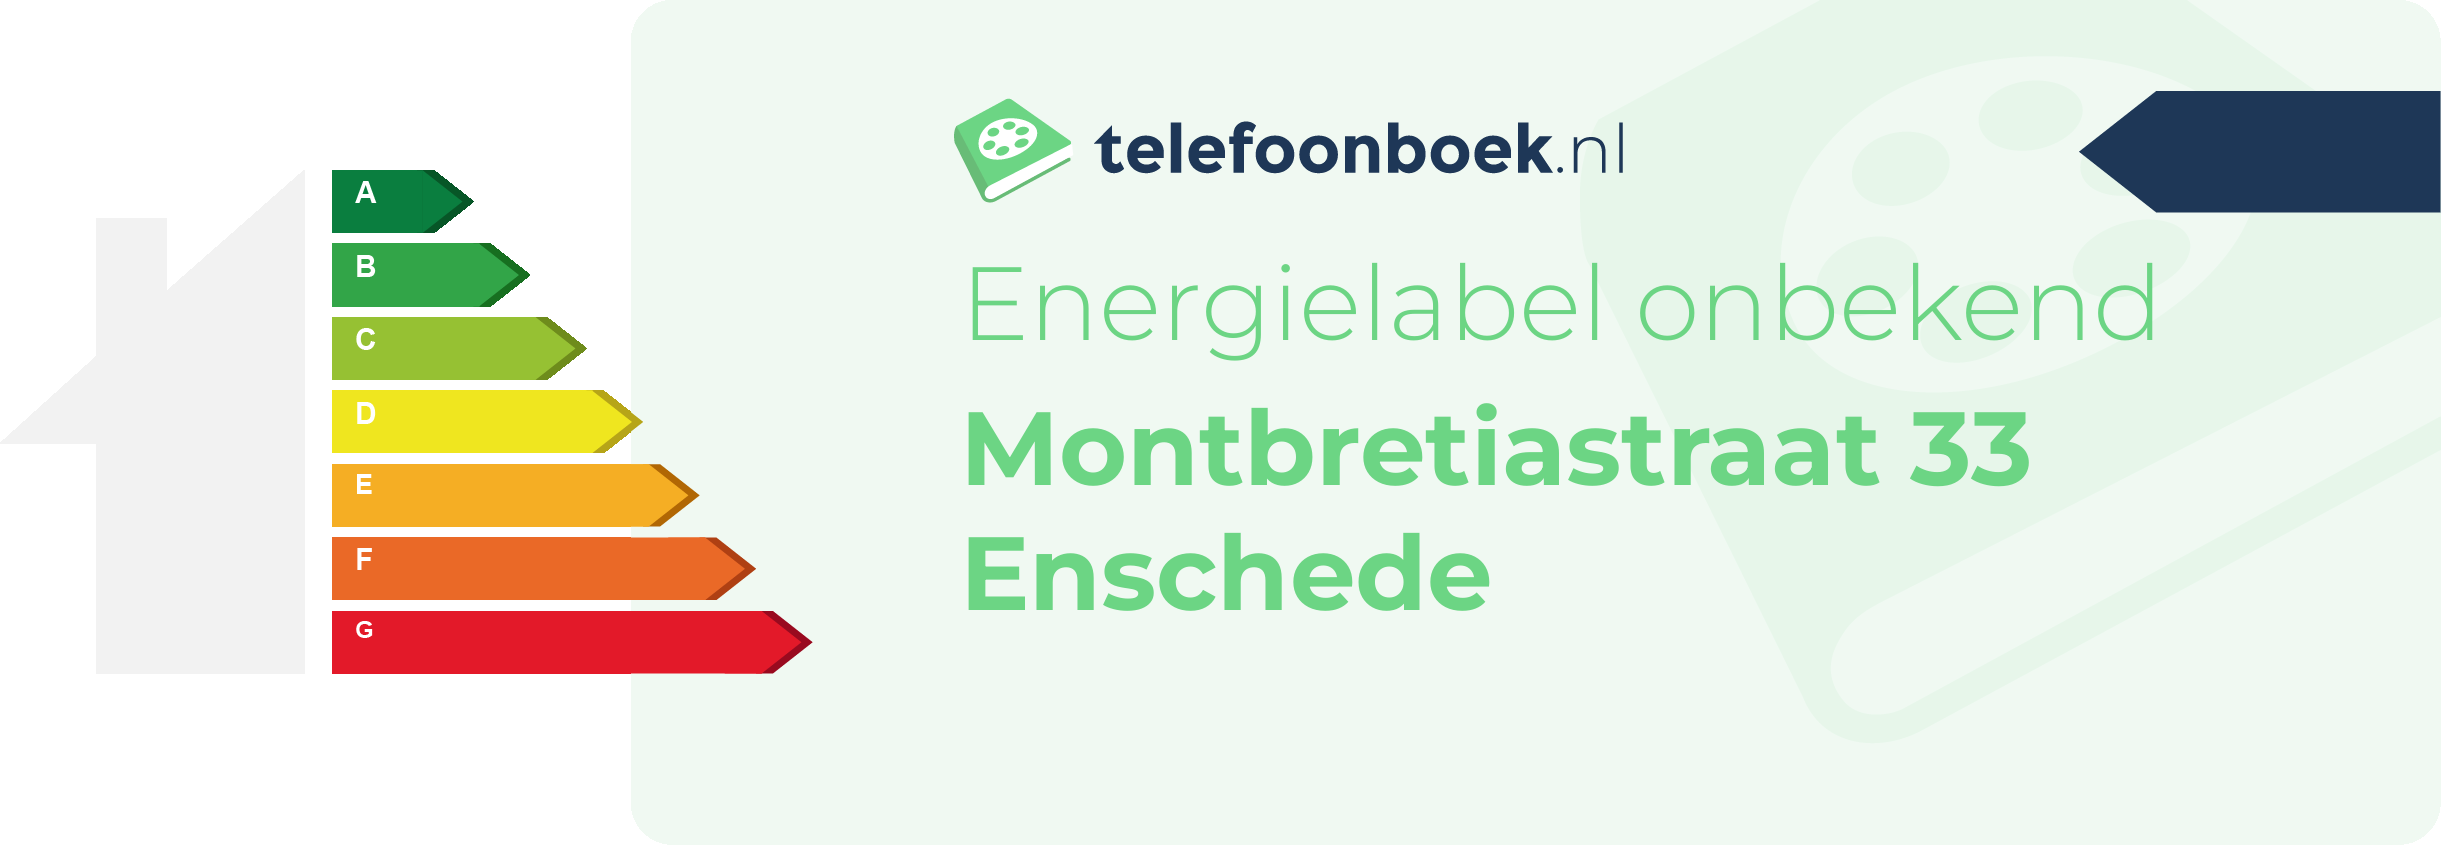 Energielabel Montbretiastraat 33 Enschede